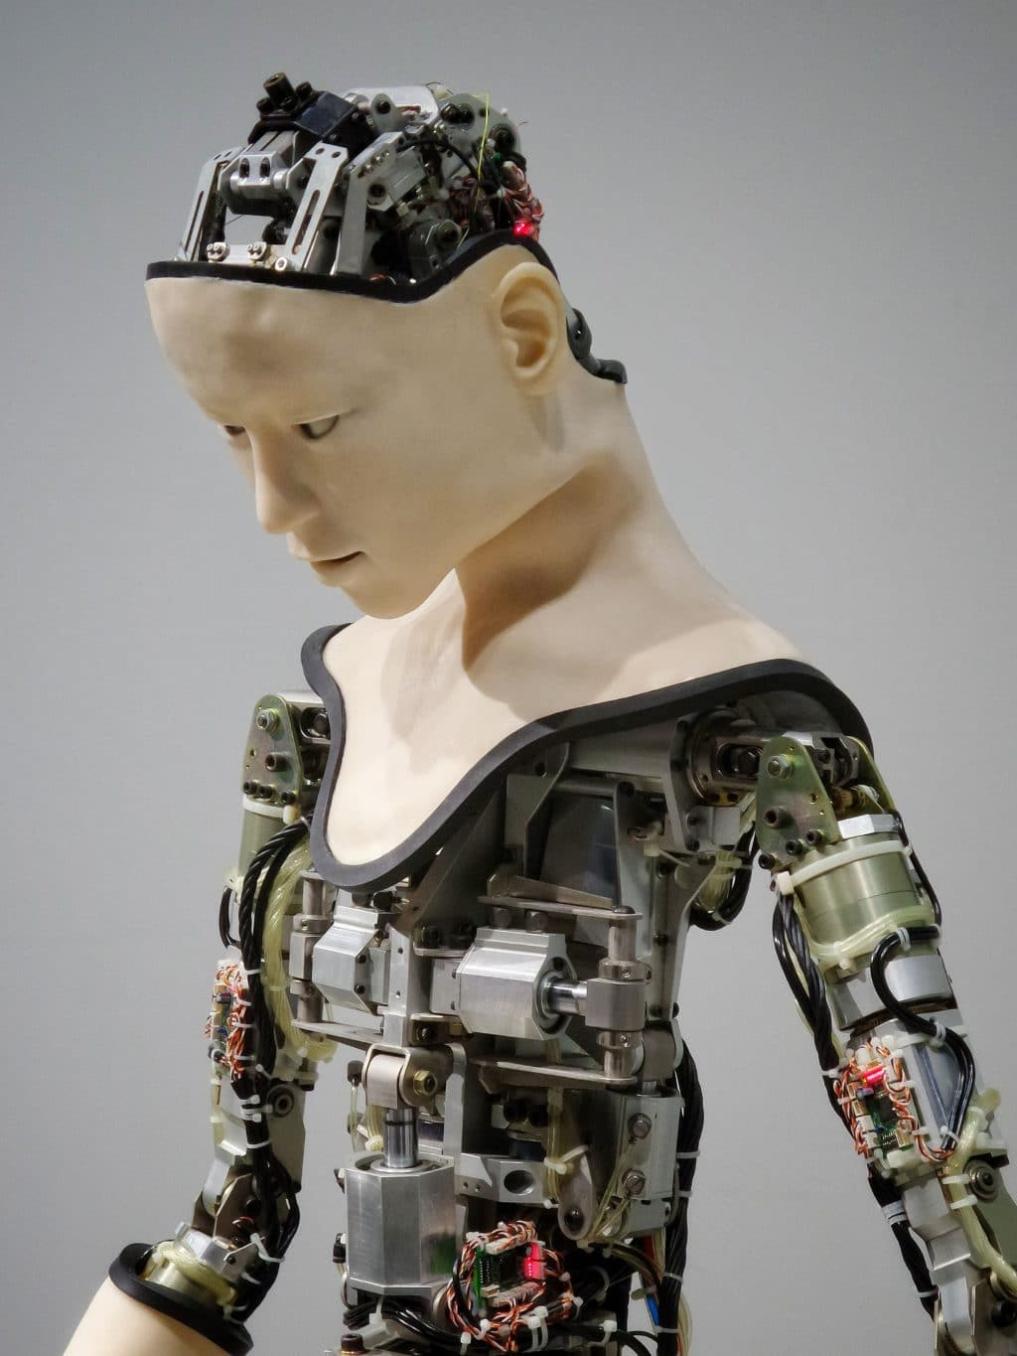 Quali sono i requisiti formativi e di abilità per lavorare nel campo dell'intelligenza artificiale e della robotica?